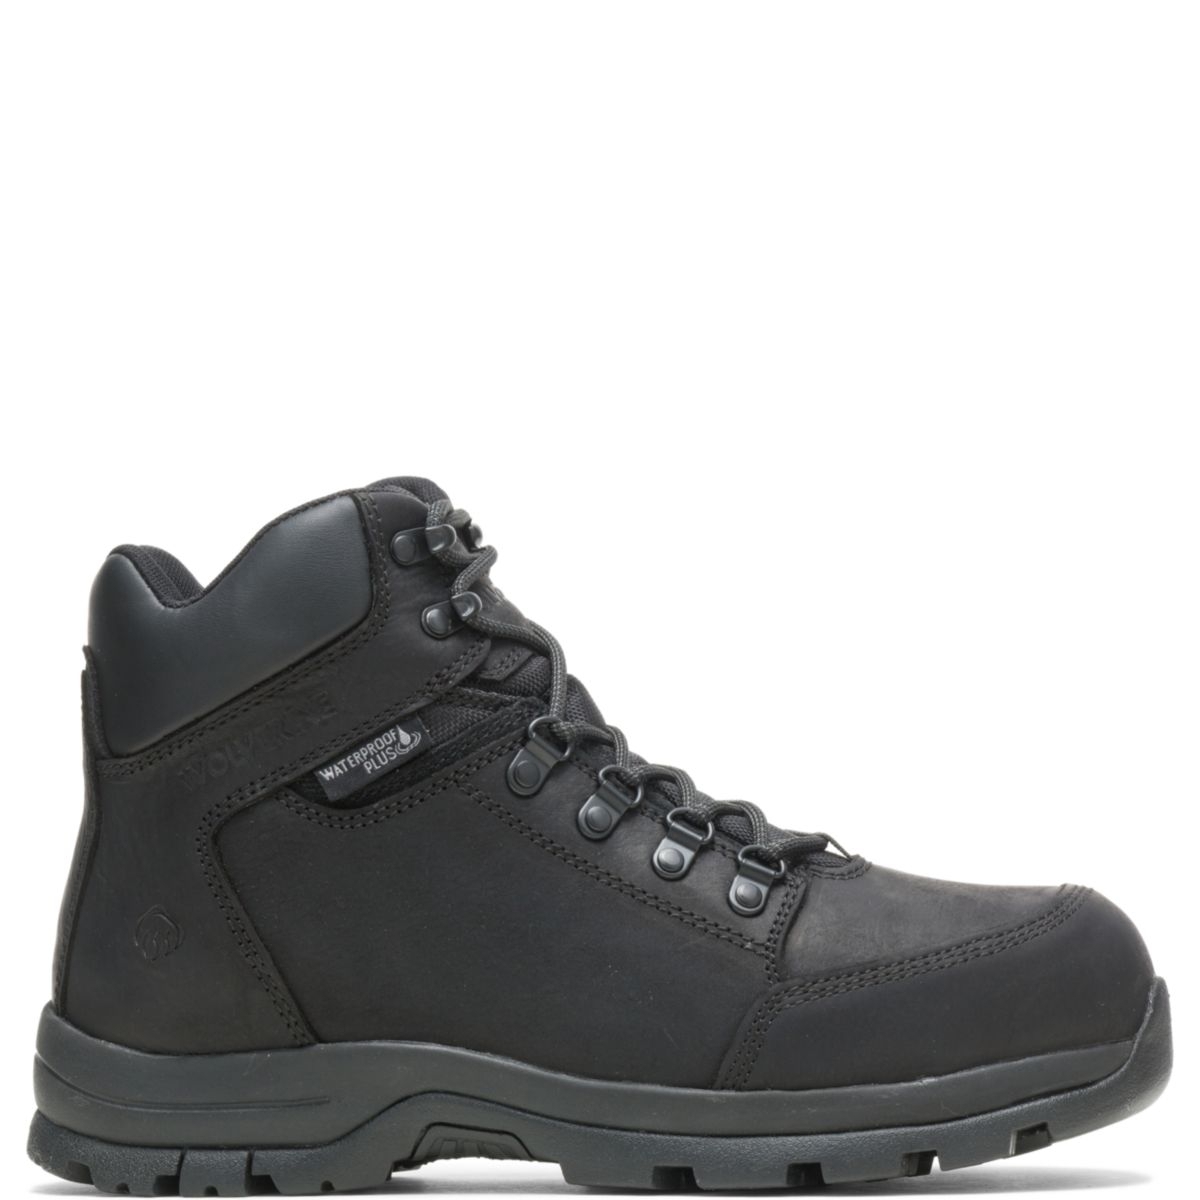 WOLVERINE Men's Grayson Steel Toe Waterproof Work Boot Black - W211042 BLACK - BLACK, 8 X-Wide